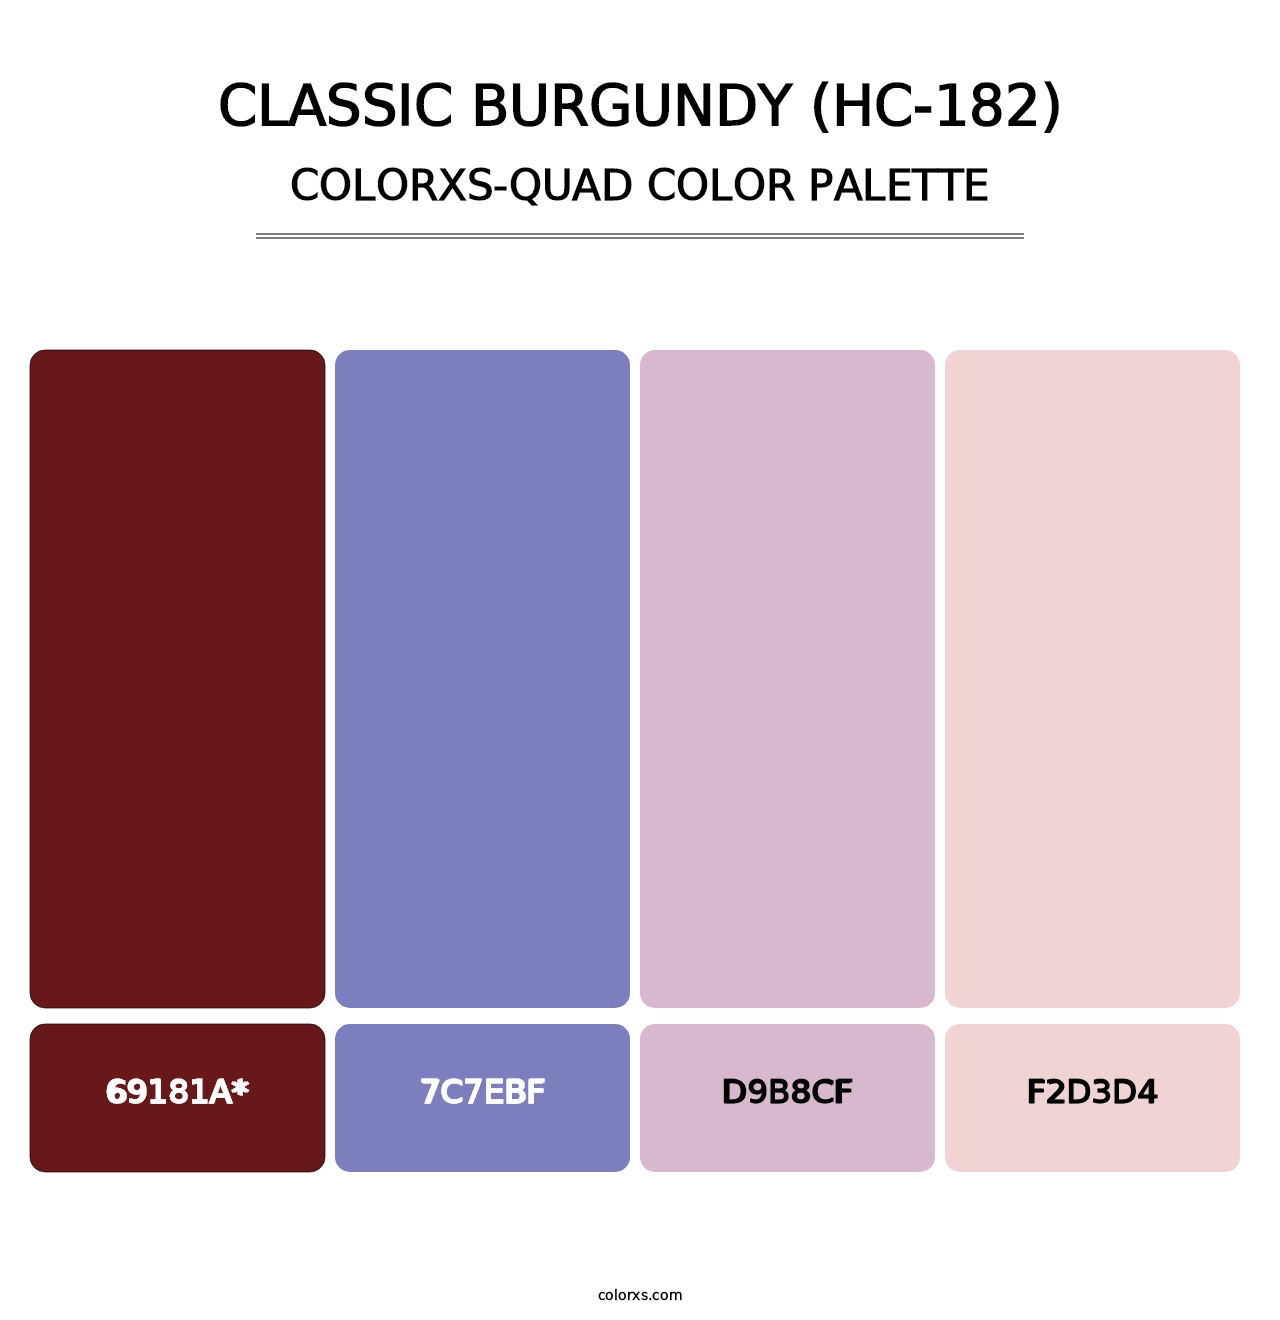 Classic Burgundy (HC-182) - Colorxs Quad Palette